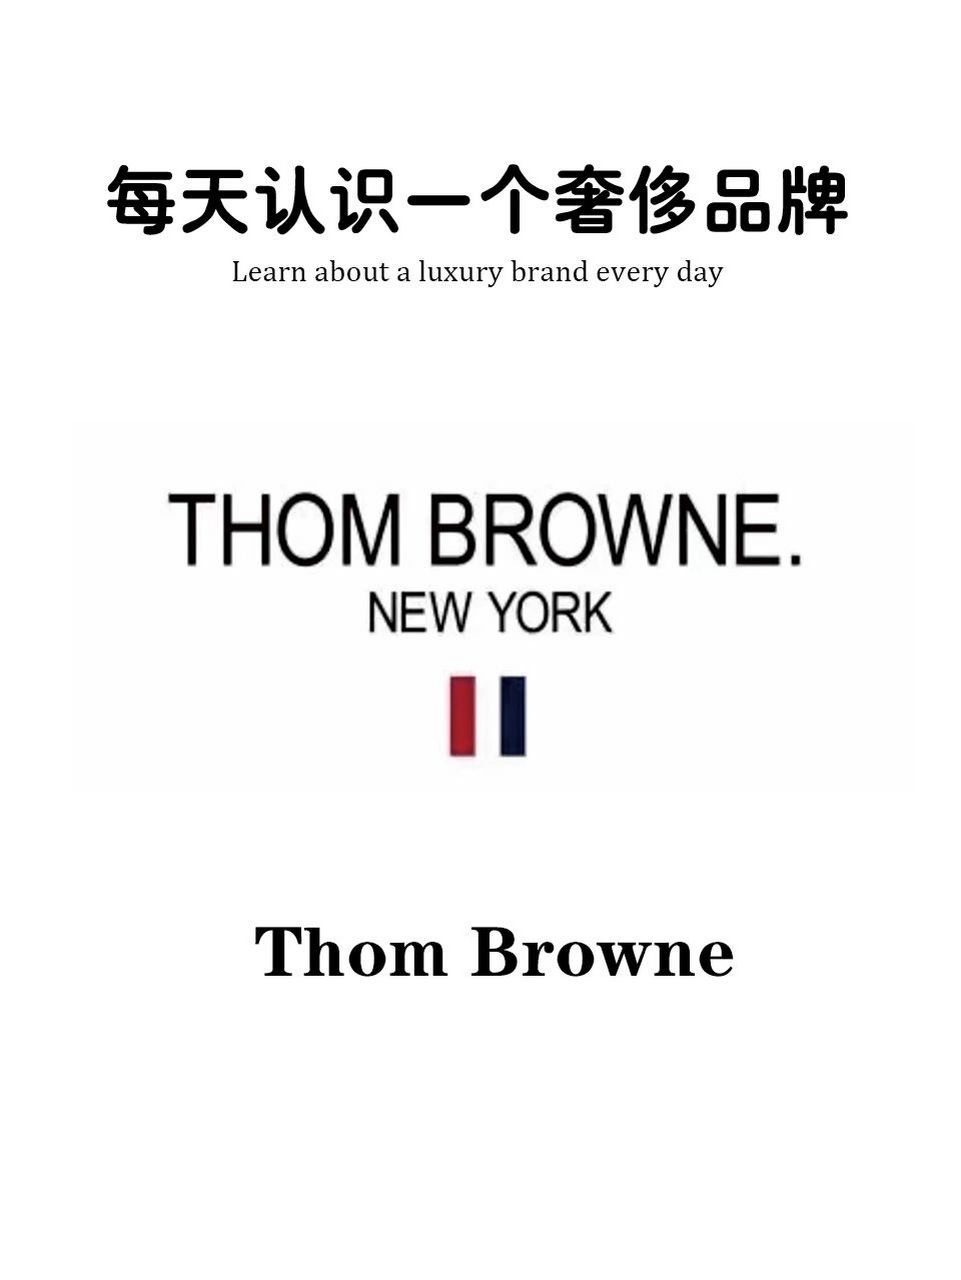 每天认识一个奢侈品牌 thom browne 99桑姆布朗尼thom browne这个